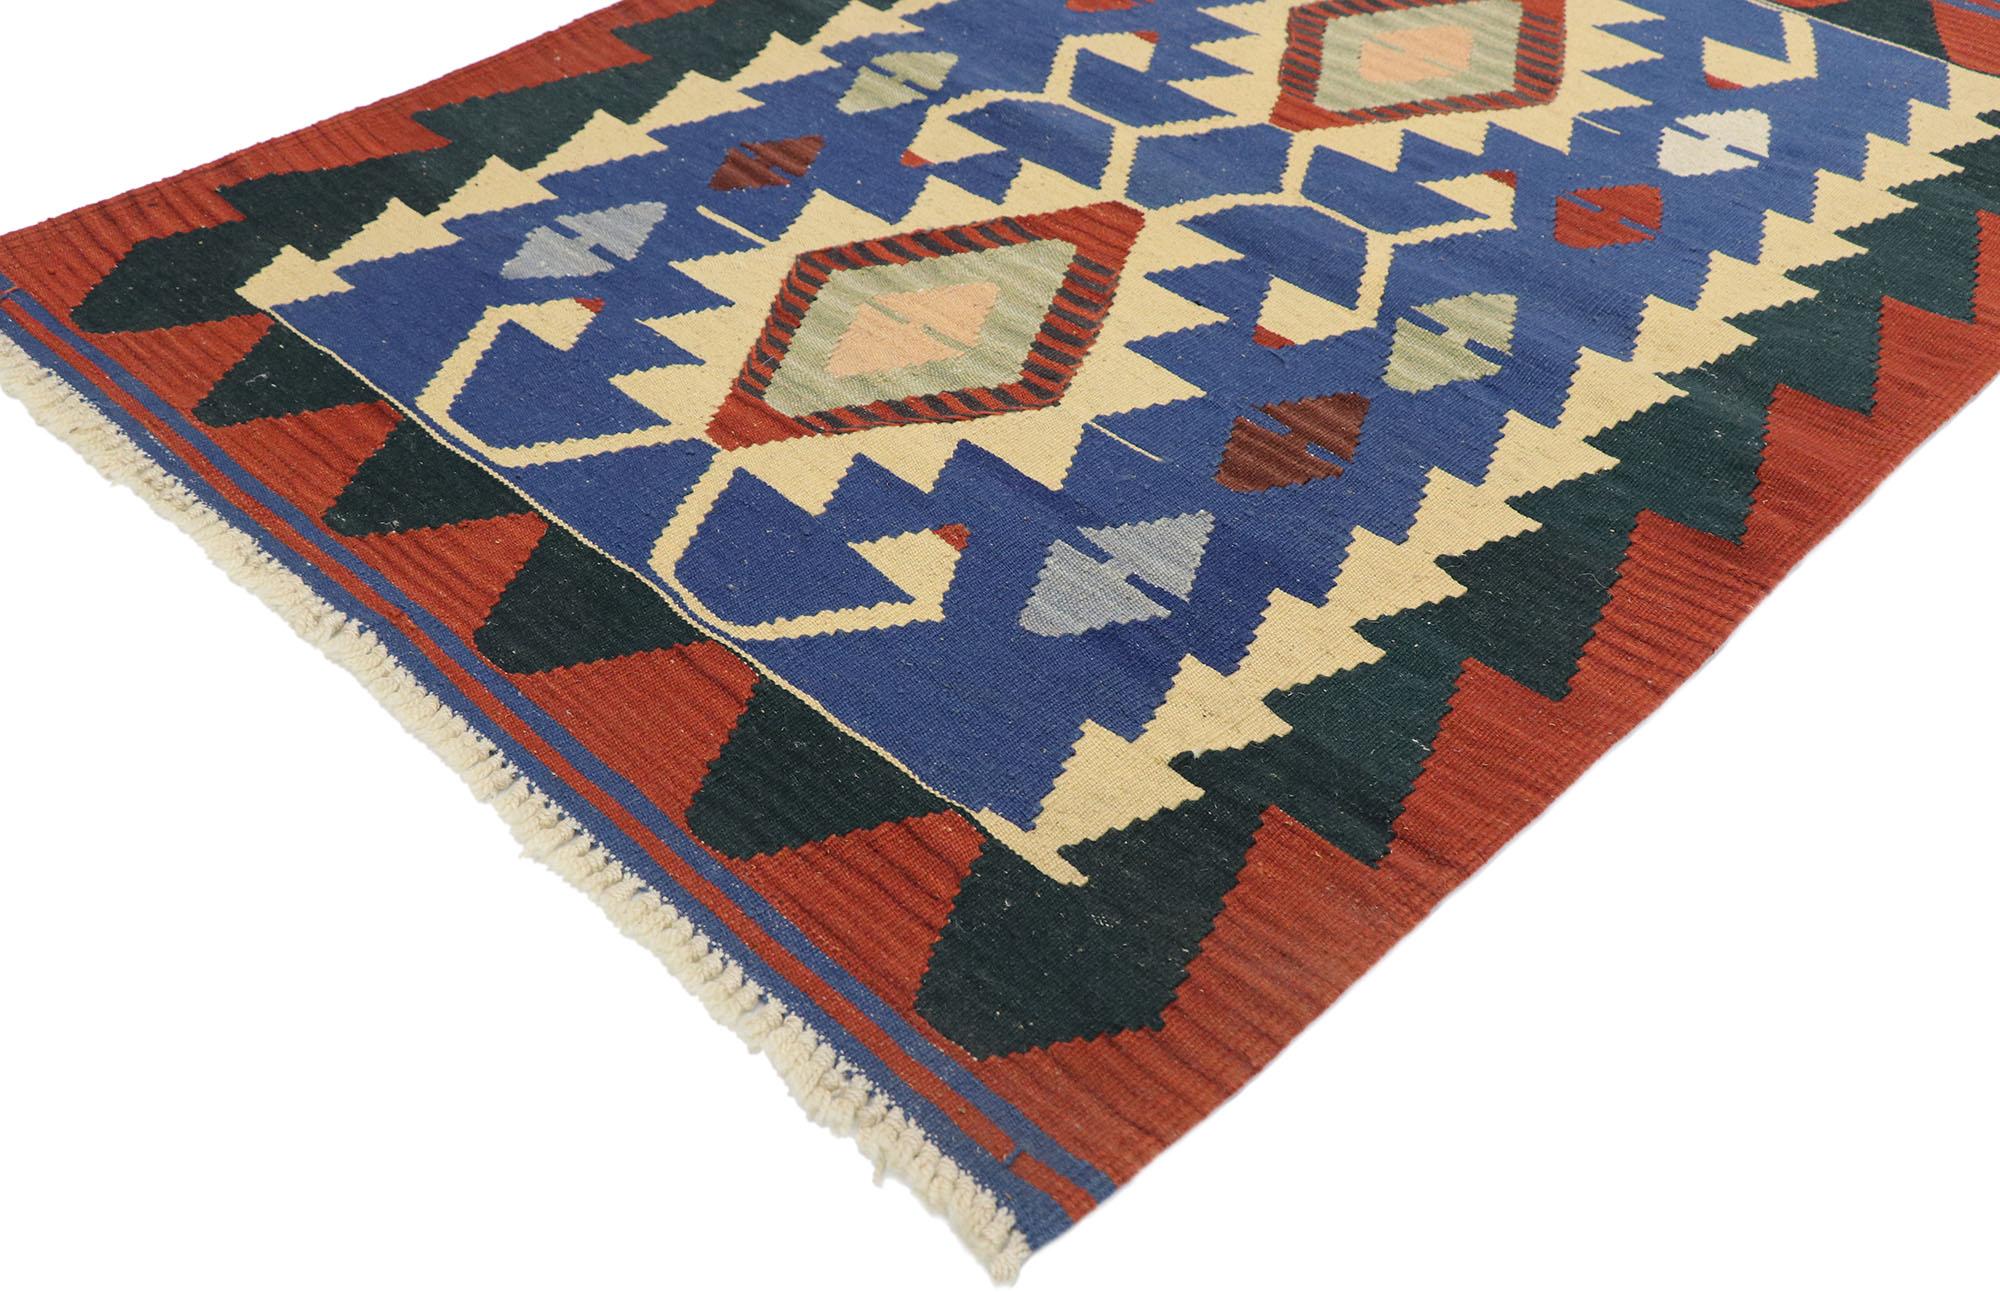 77841, tapis vintage Persan Shiraz Kilim avec style Tribal. Plein de petits détails et un design expressif audacieux combiné avec des couleurs vibrantes et un style tribal, ce tapis kilim persan vintage en laine tissé à la main est une vision